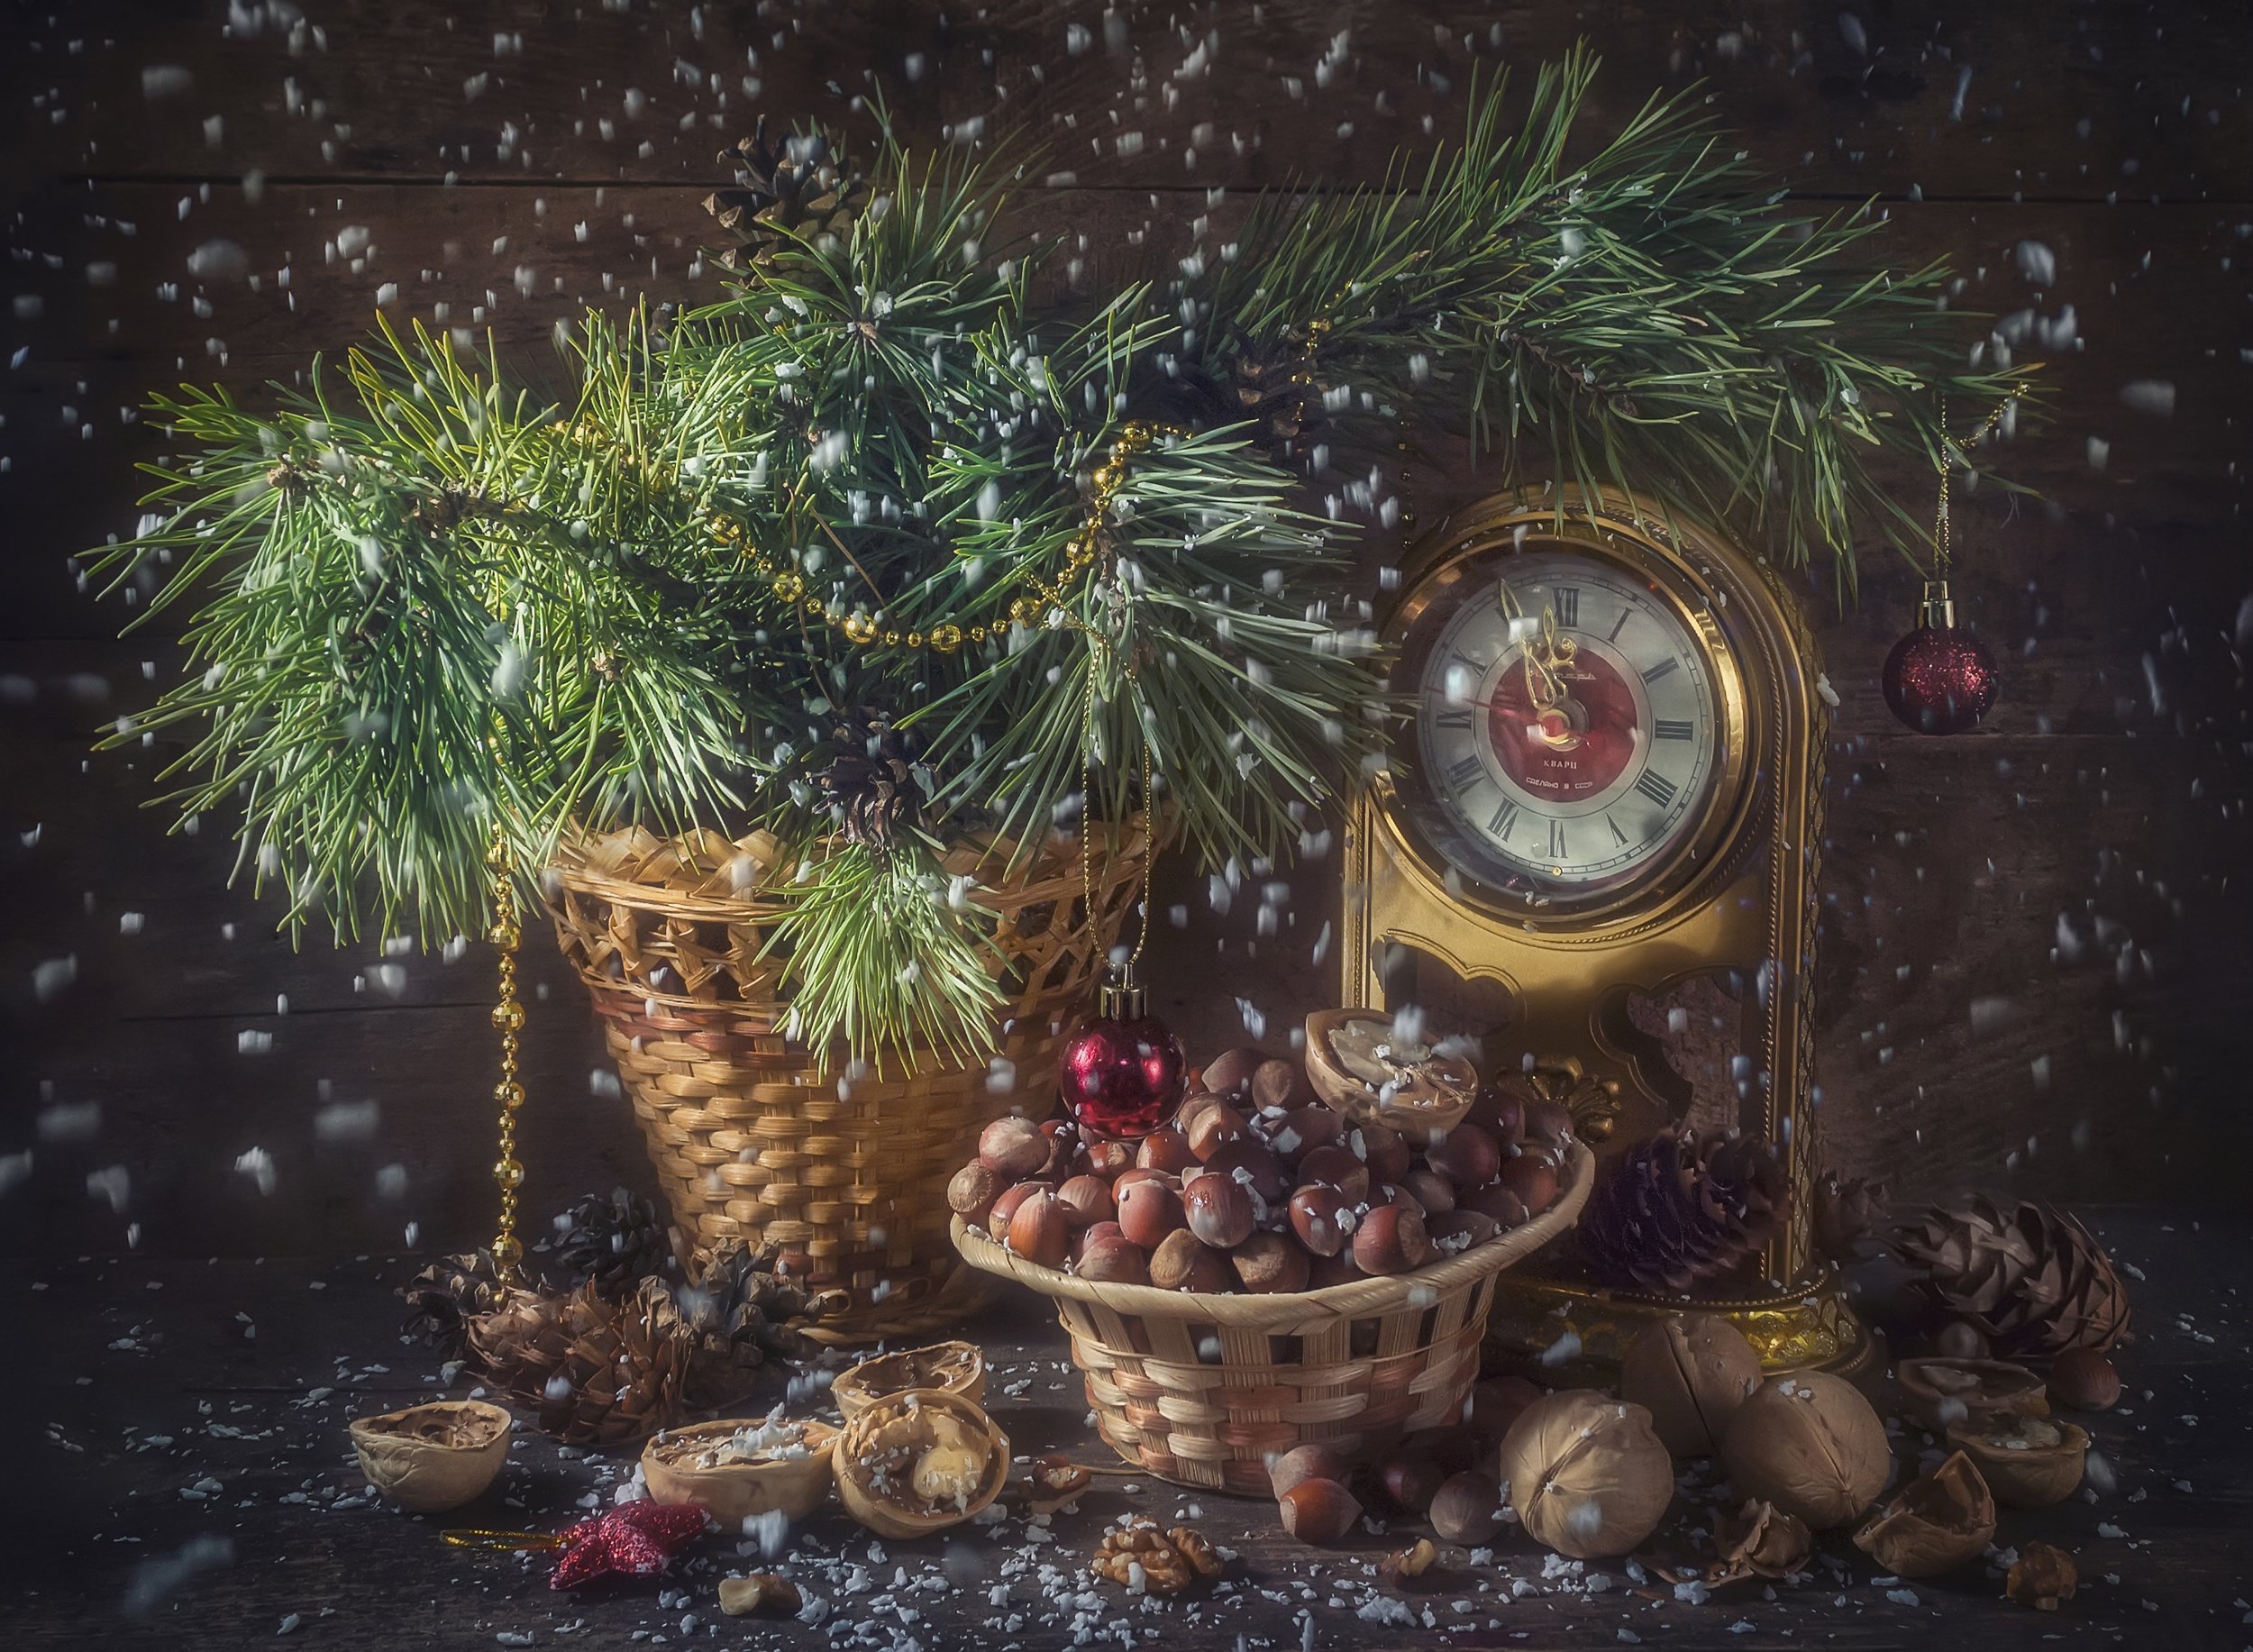 ёлочные игрушки,ёлка,ветка,шарики,новый год,праздник,корзина,часы,снег,орехи, Владимир Володин